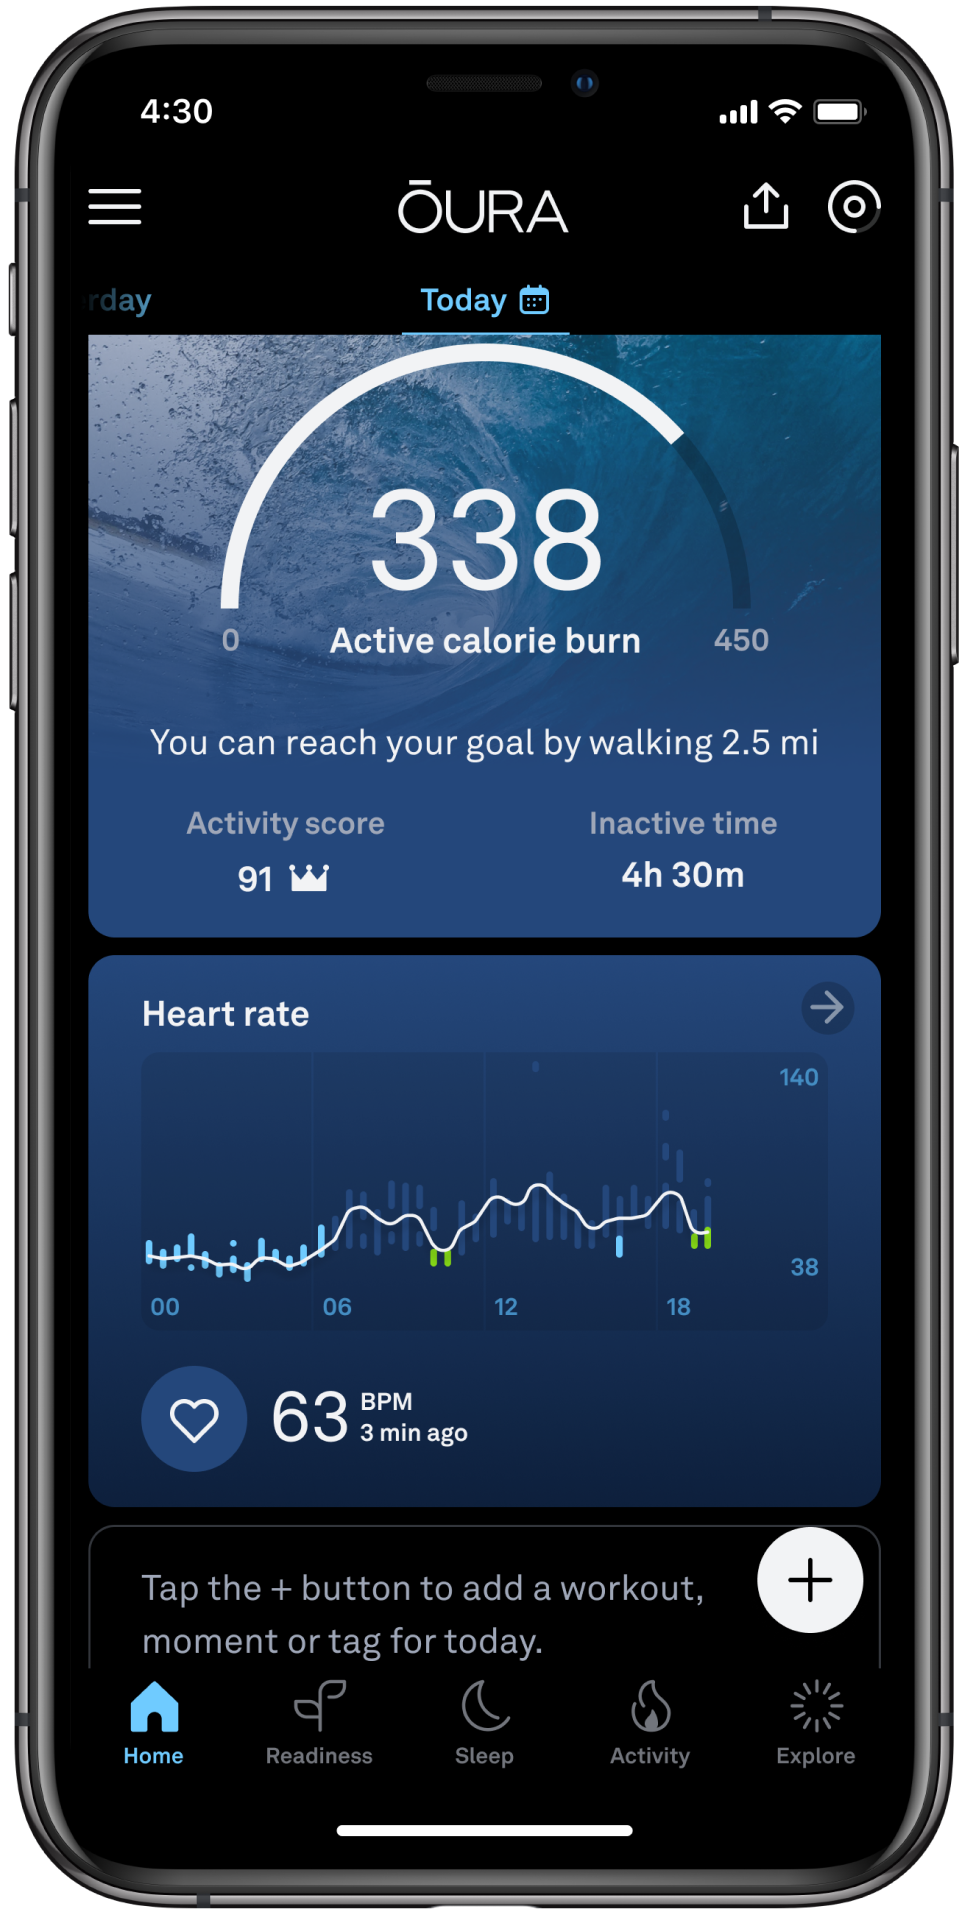 la schermata iniziale dell'App Oura, che mostra il grafico della frequenza cardiaca nelle 24 ore. Il grafico presenta segmenti colorati, in cui quello blu indica la frequenza cardiaca durante il sonno e quello verde i periodi rigeneranti